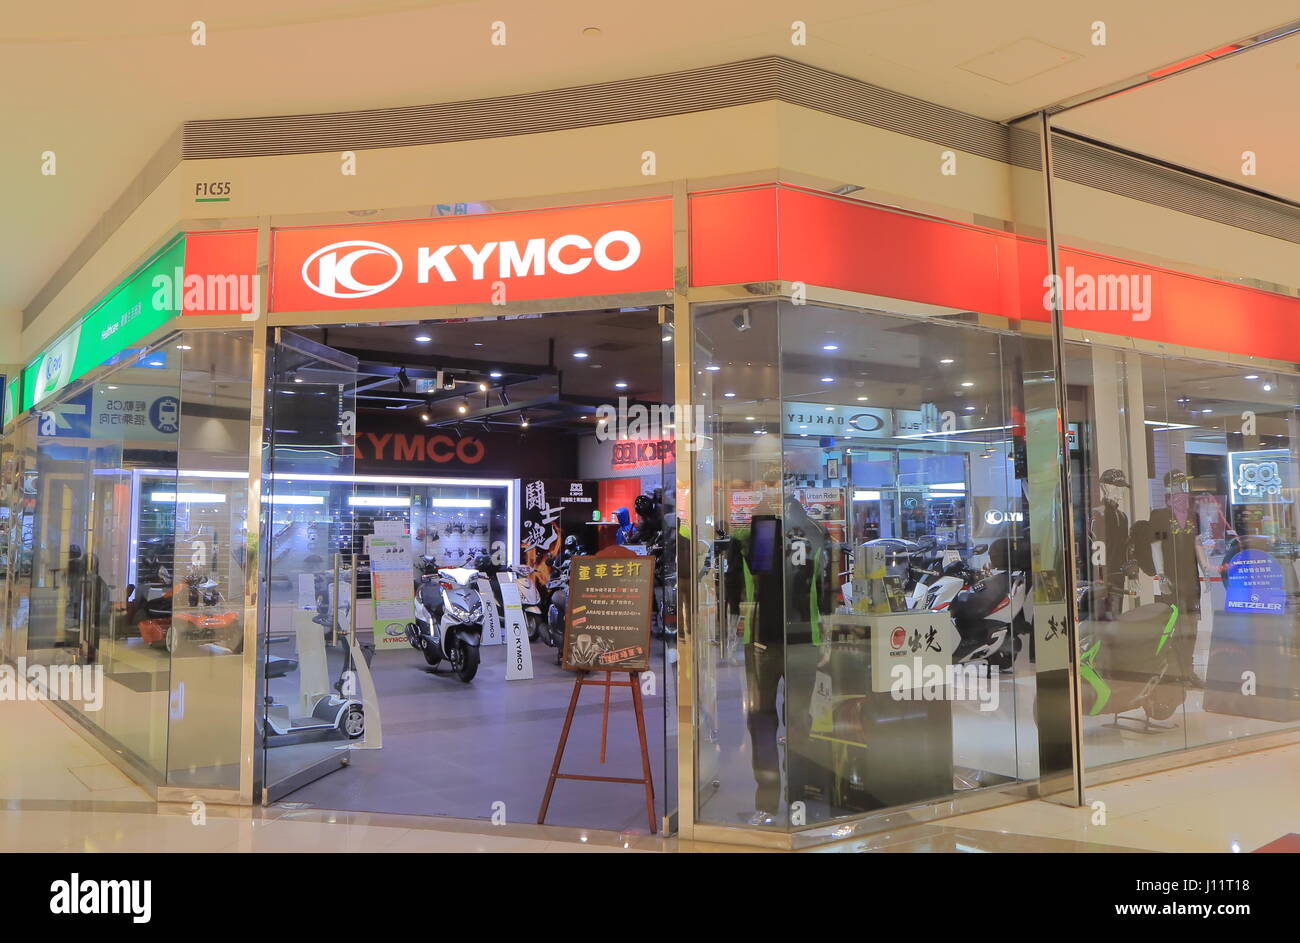 Kymco. Kymco est une société taïwanaise qui fabrique des scooters, motos fondée en 1963. Banque D'Images